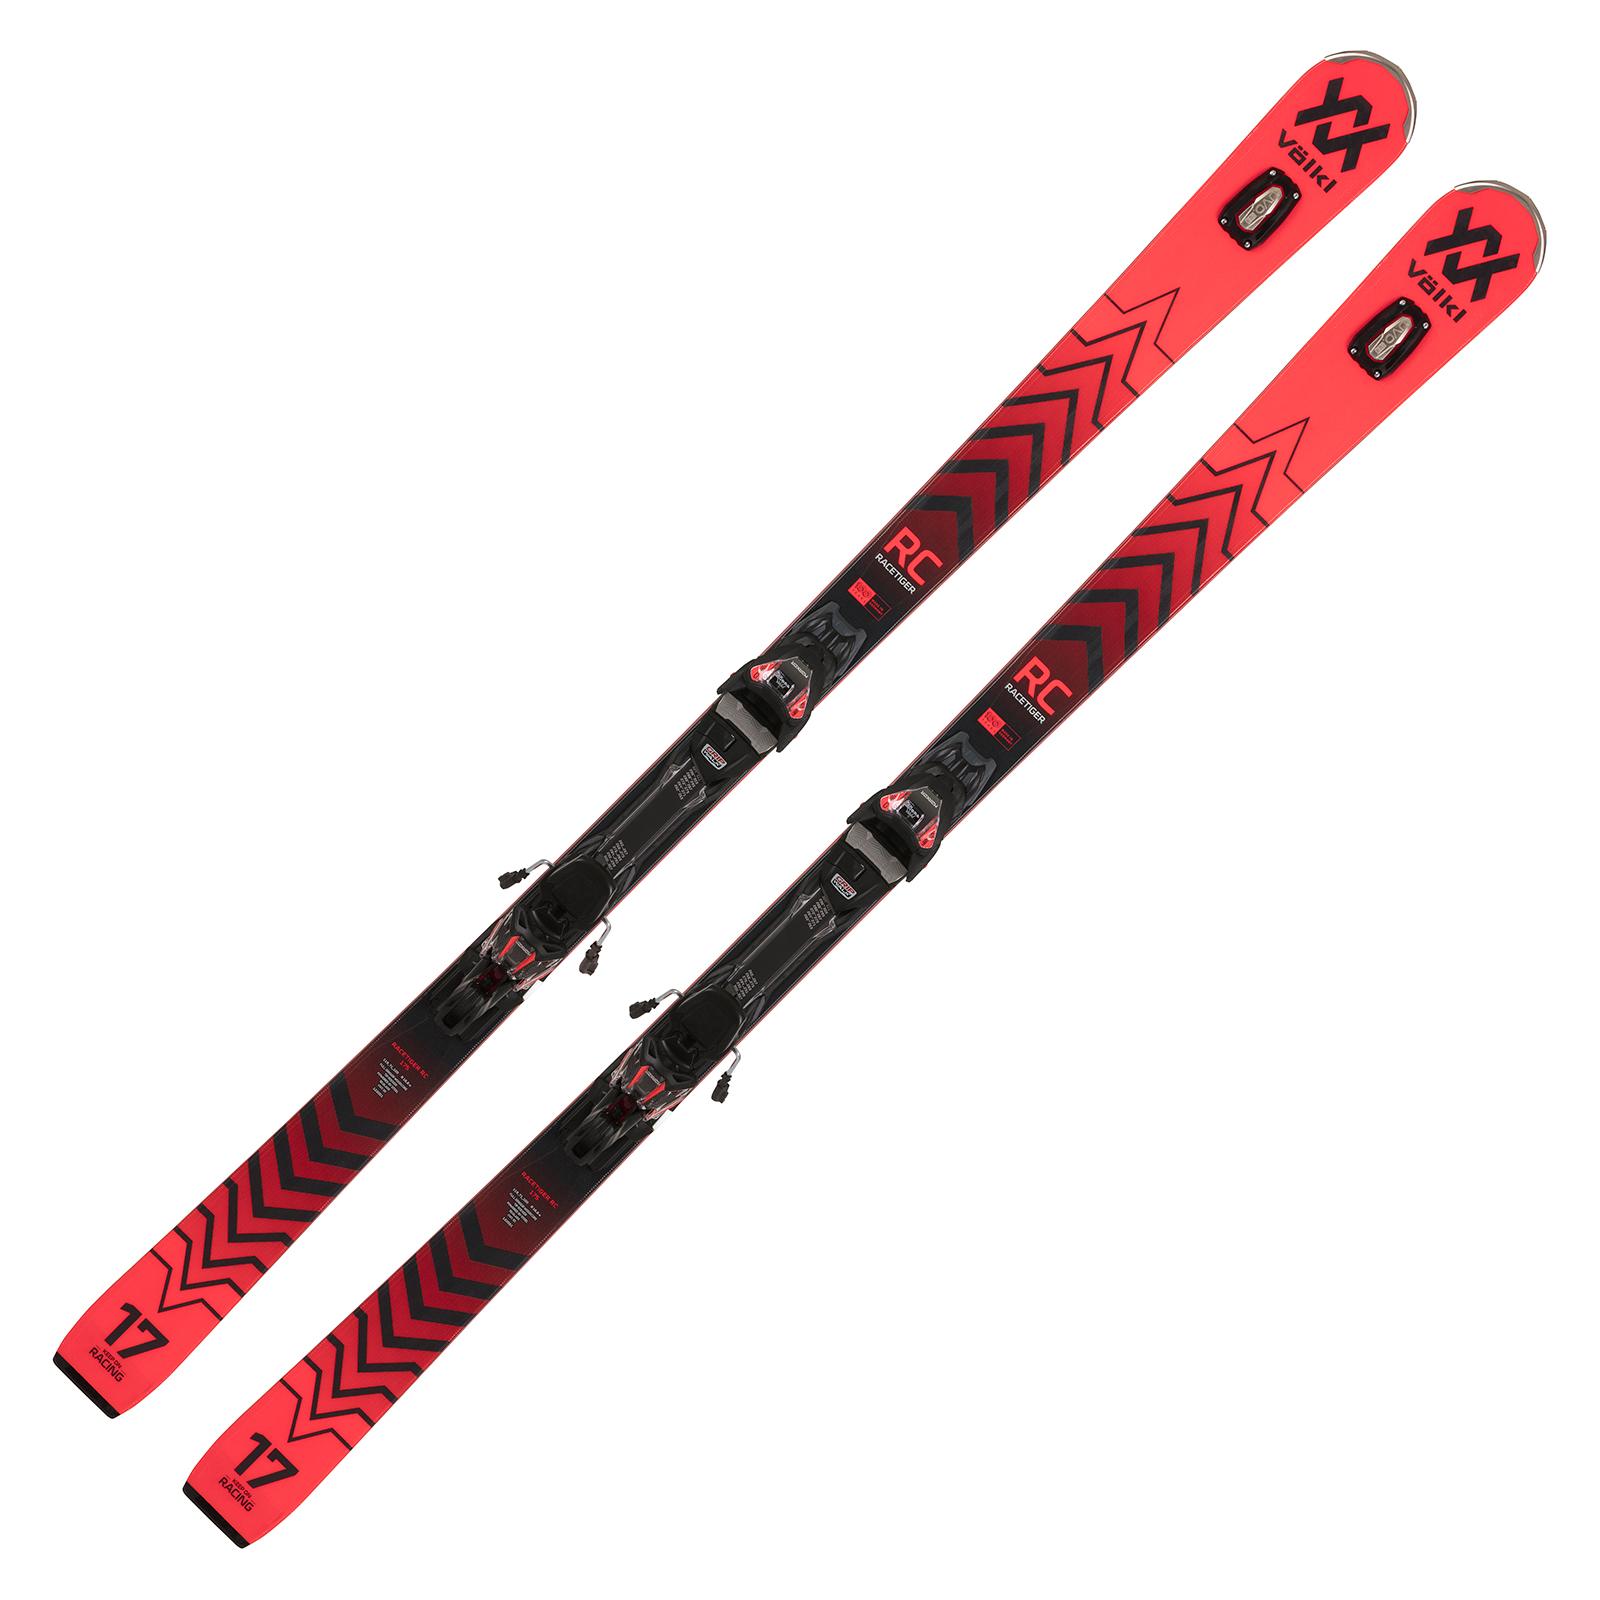 Völkl Racetiger RC red Racecarver Ski 2022/23